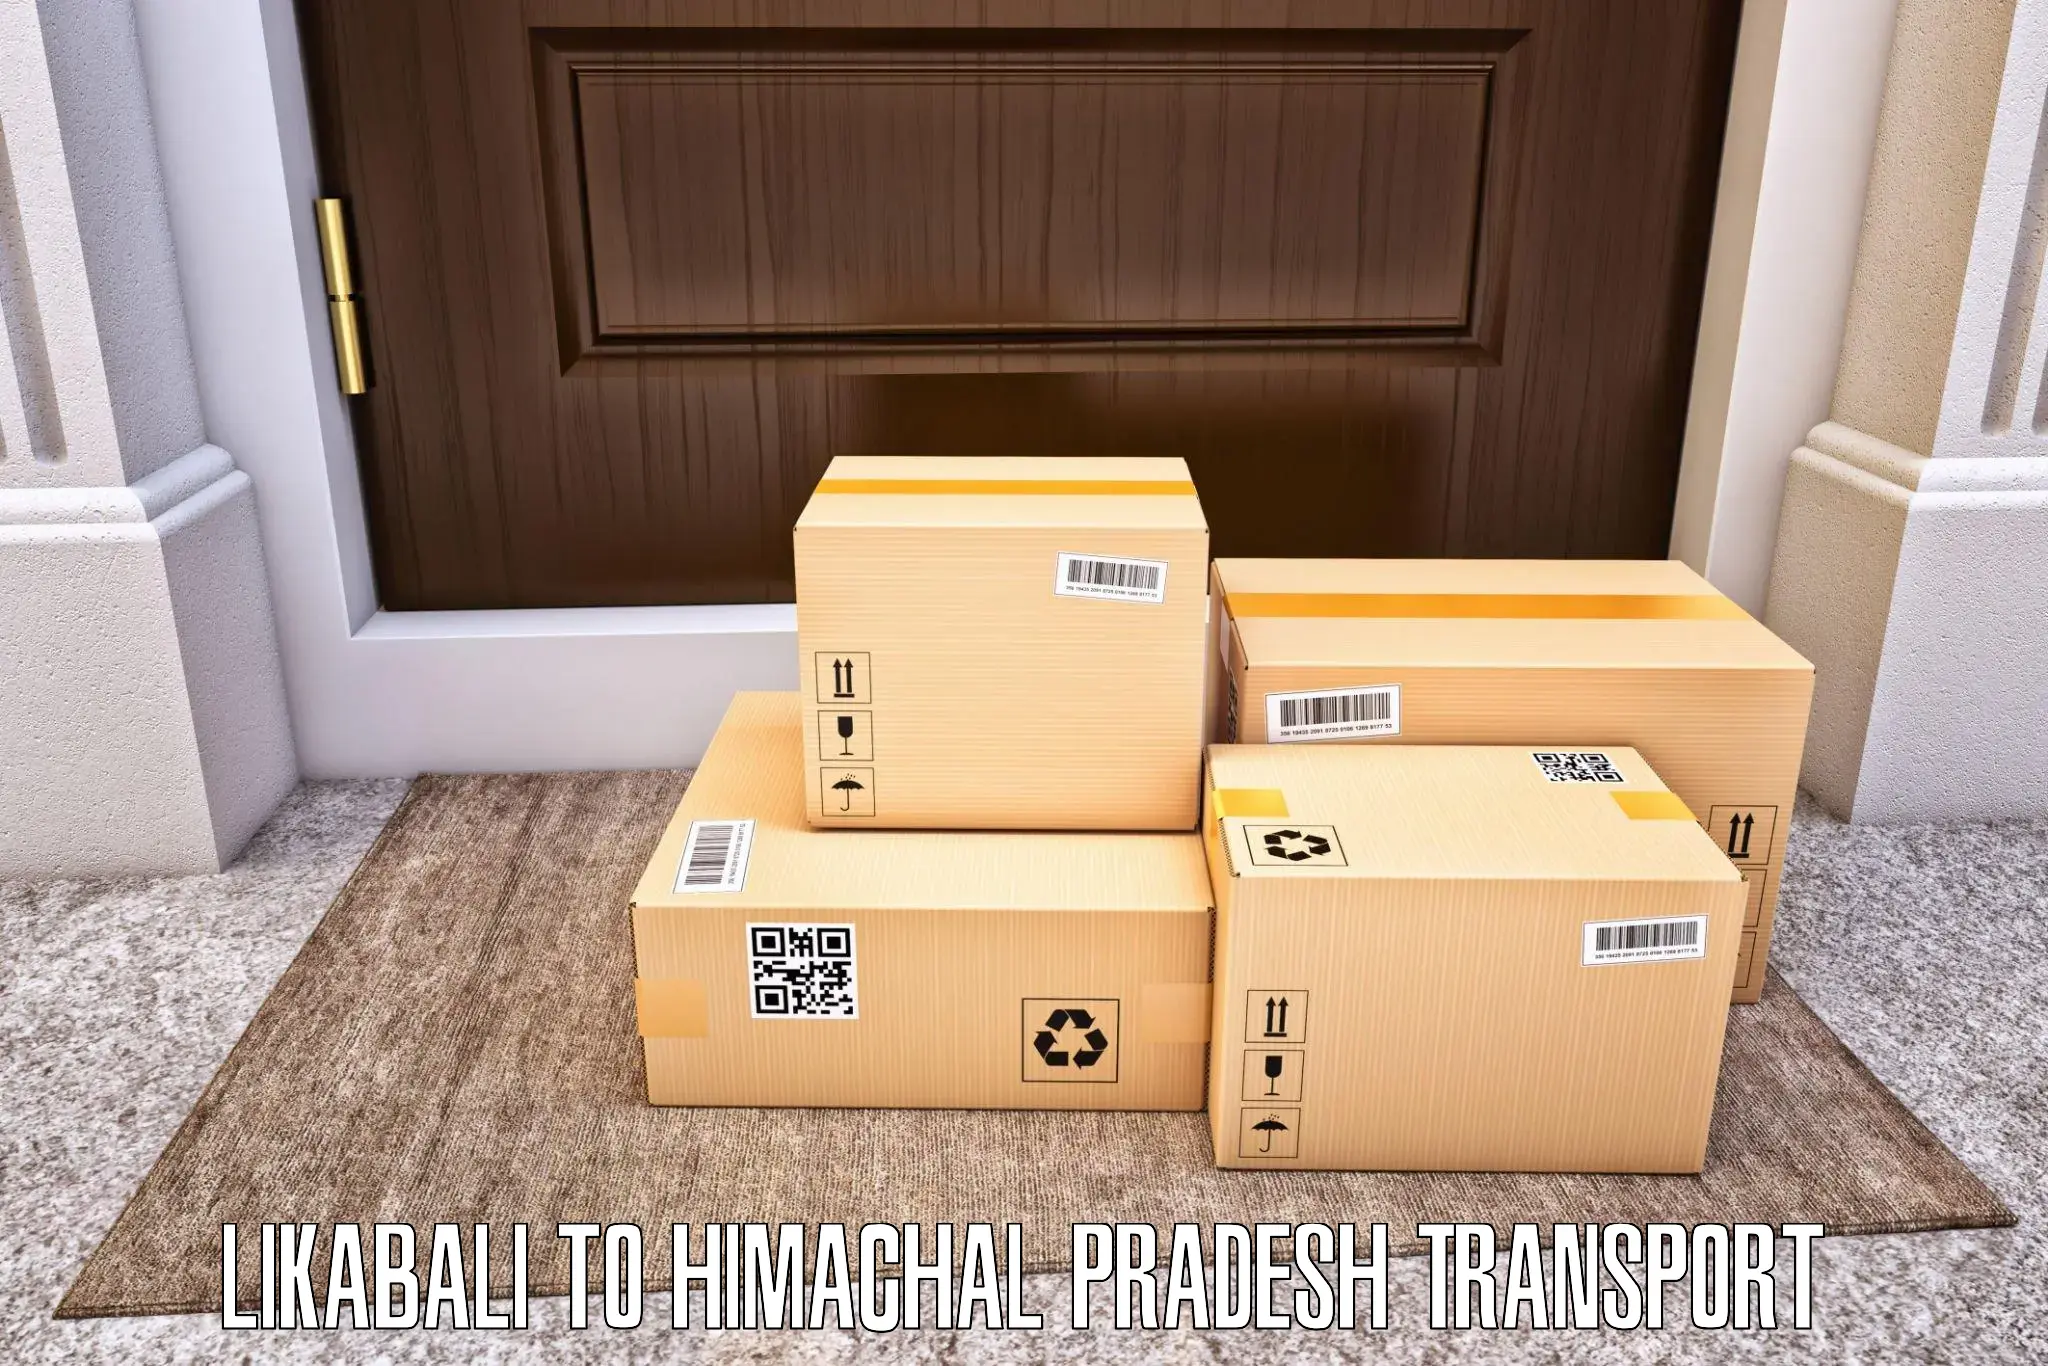 Material transport services Likabali to Karsog